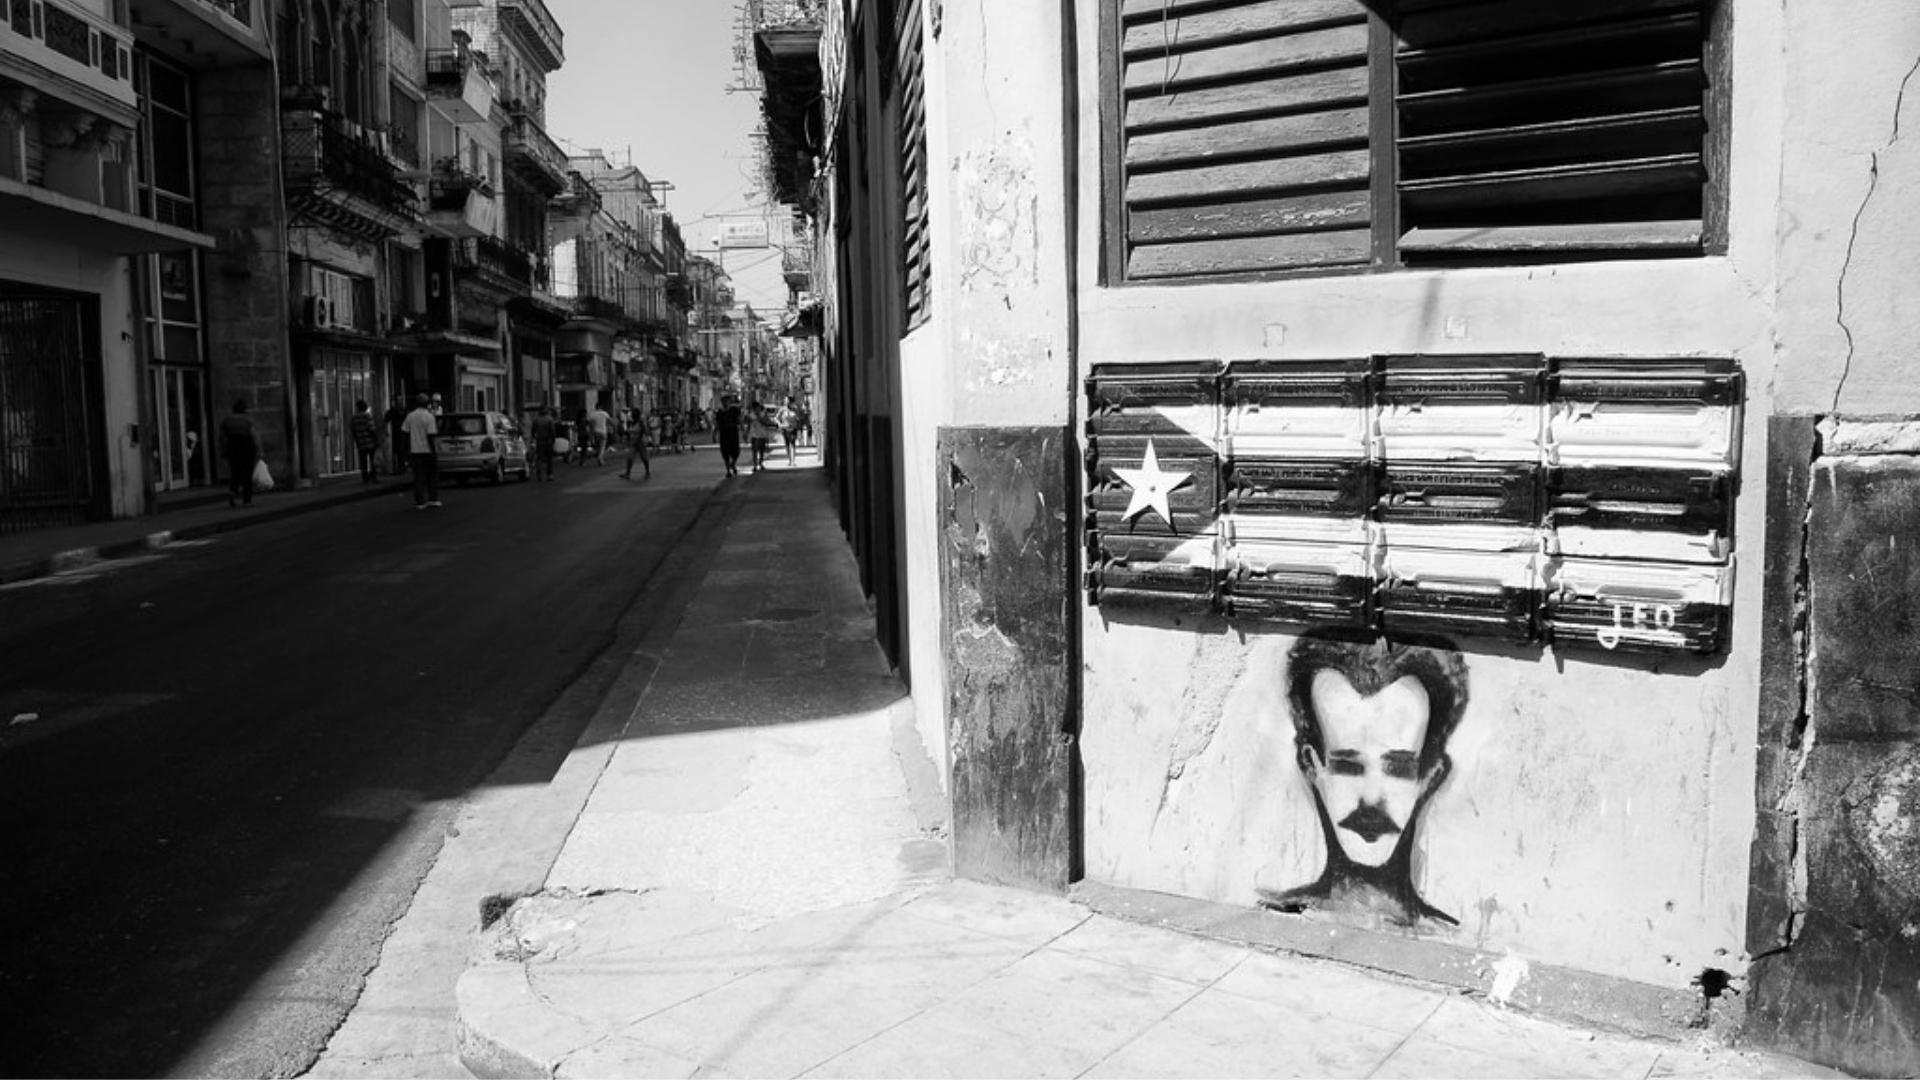 Imagen de Martí y bandera cubana en Calle de La Habana